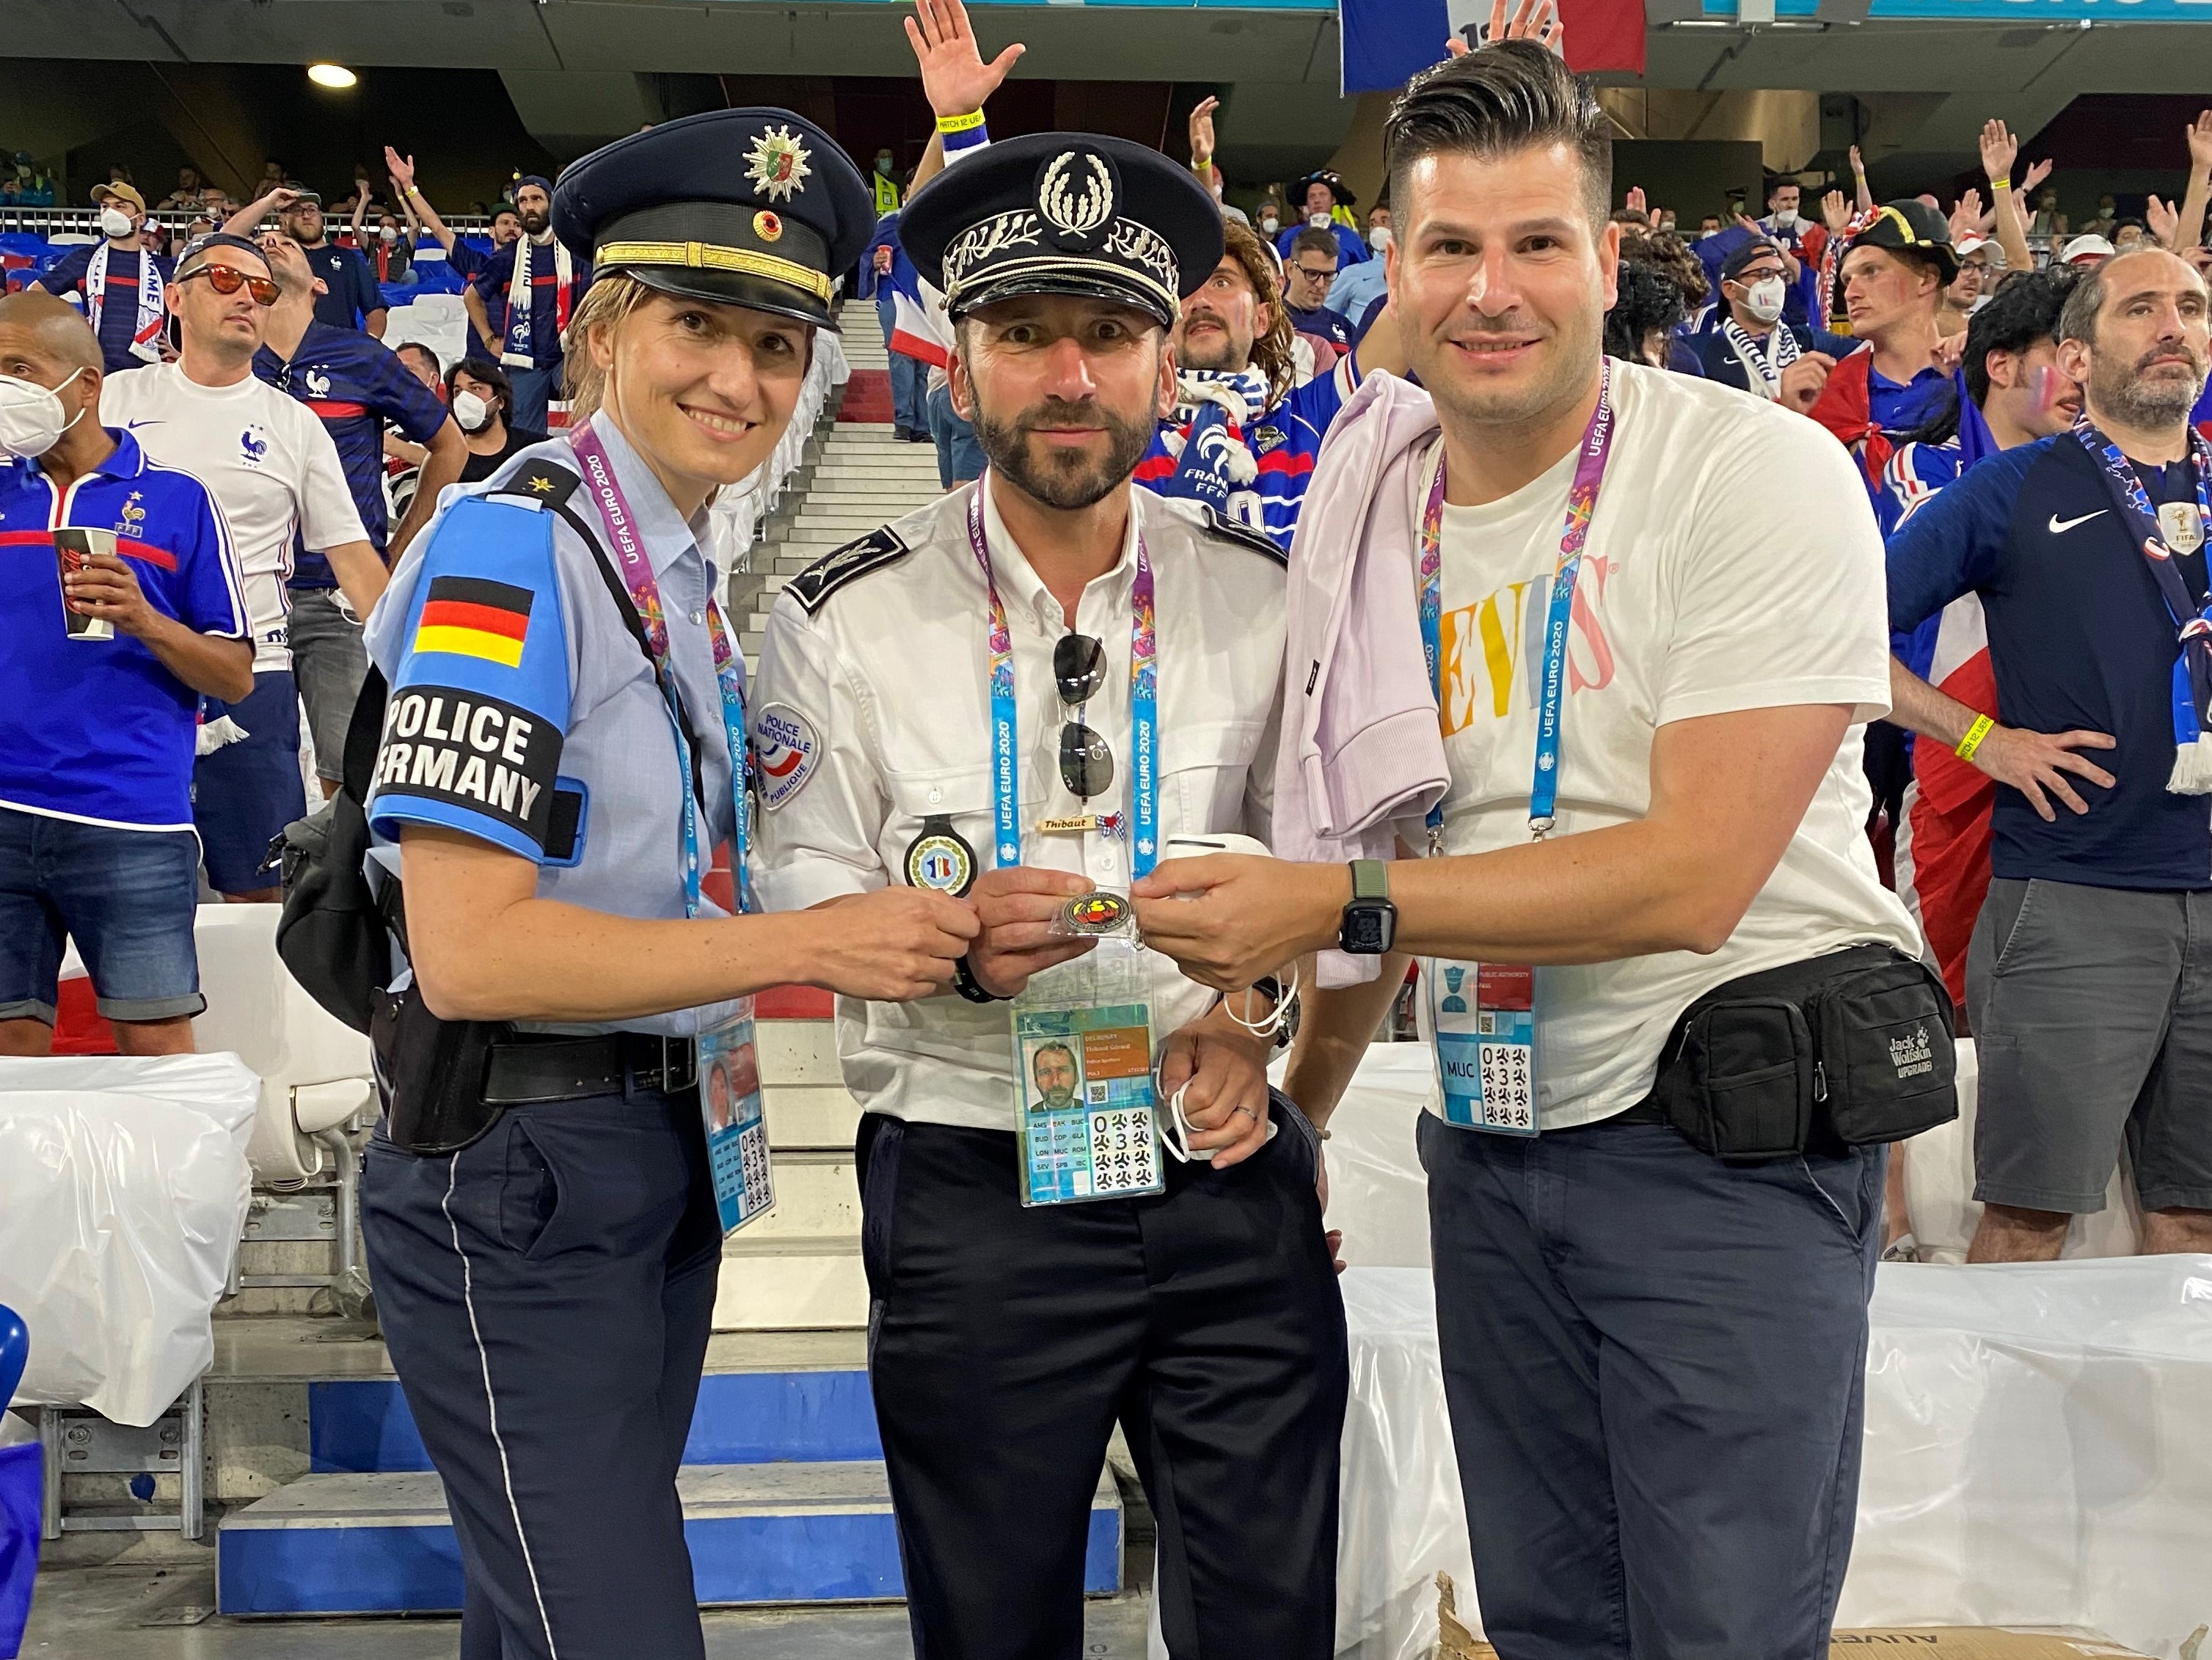 Zwei Polizisten und eine Polizistin aus verschiedenen Nationen zusammen im Stadion